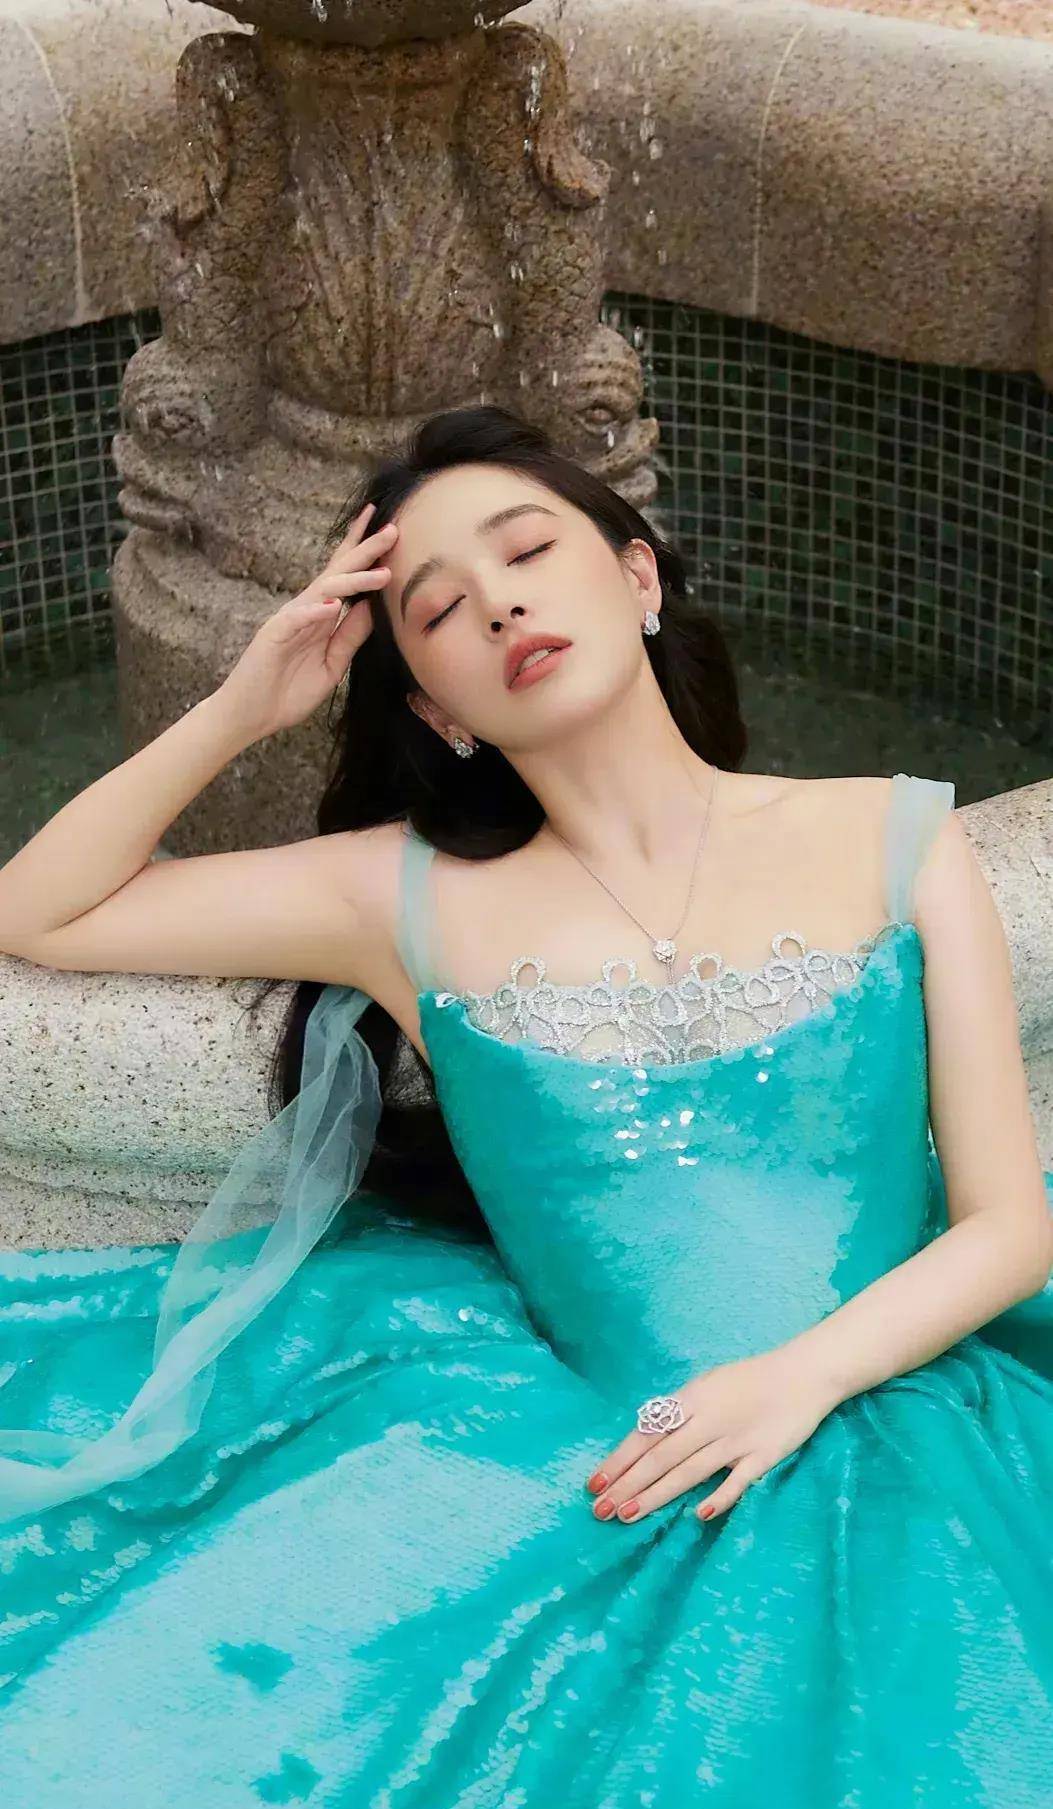 阚清子性感美图:蓝绿抹胸裙展现清新魅力,女神风范